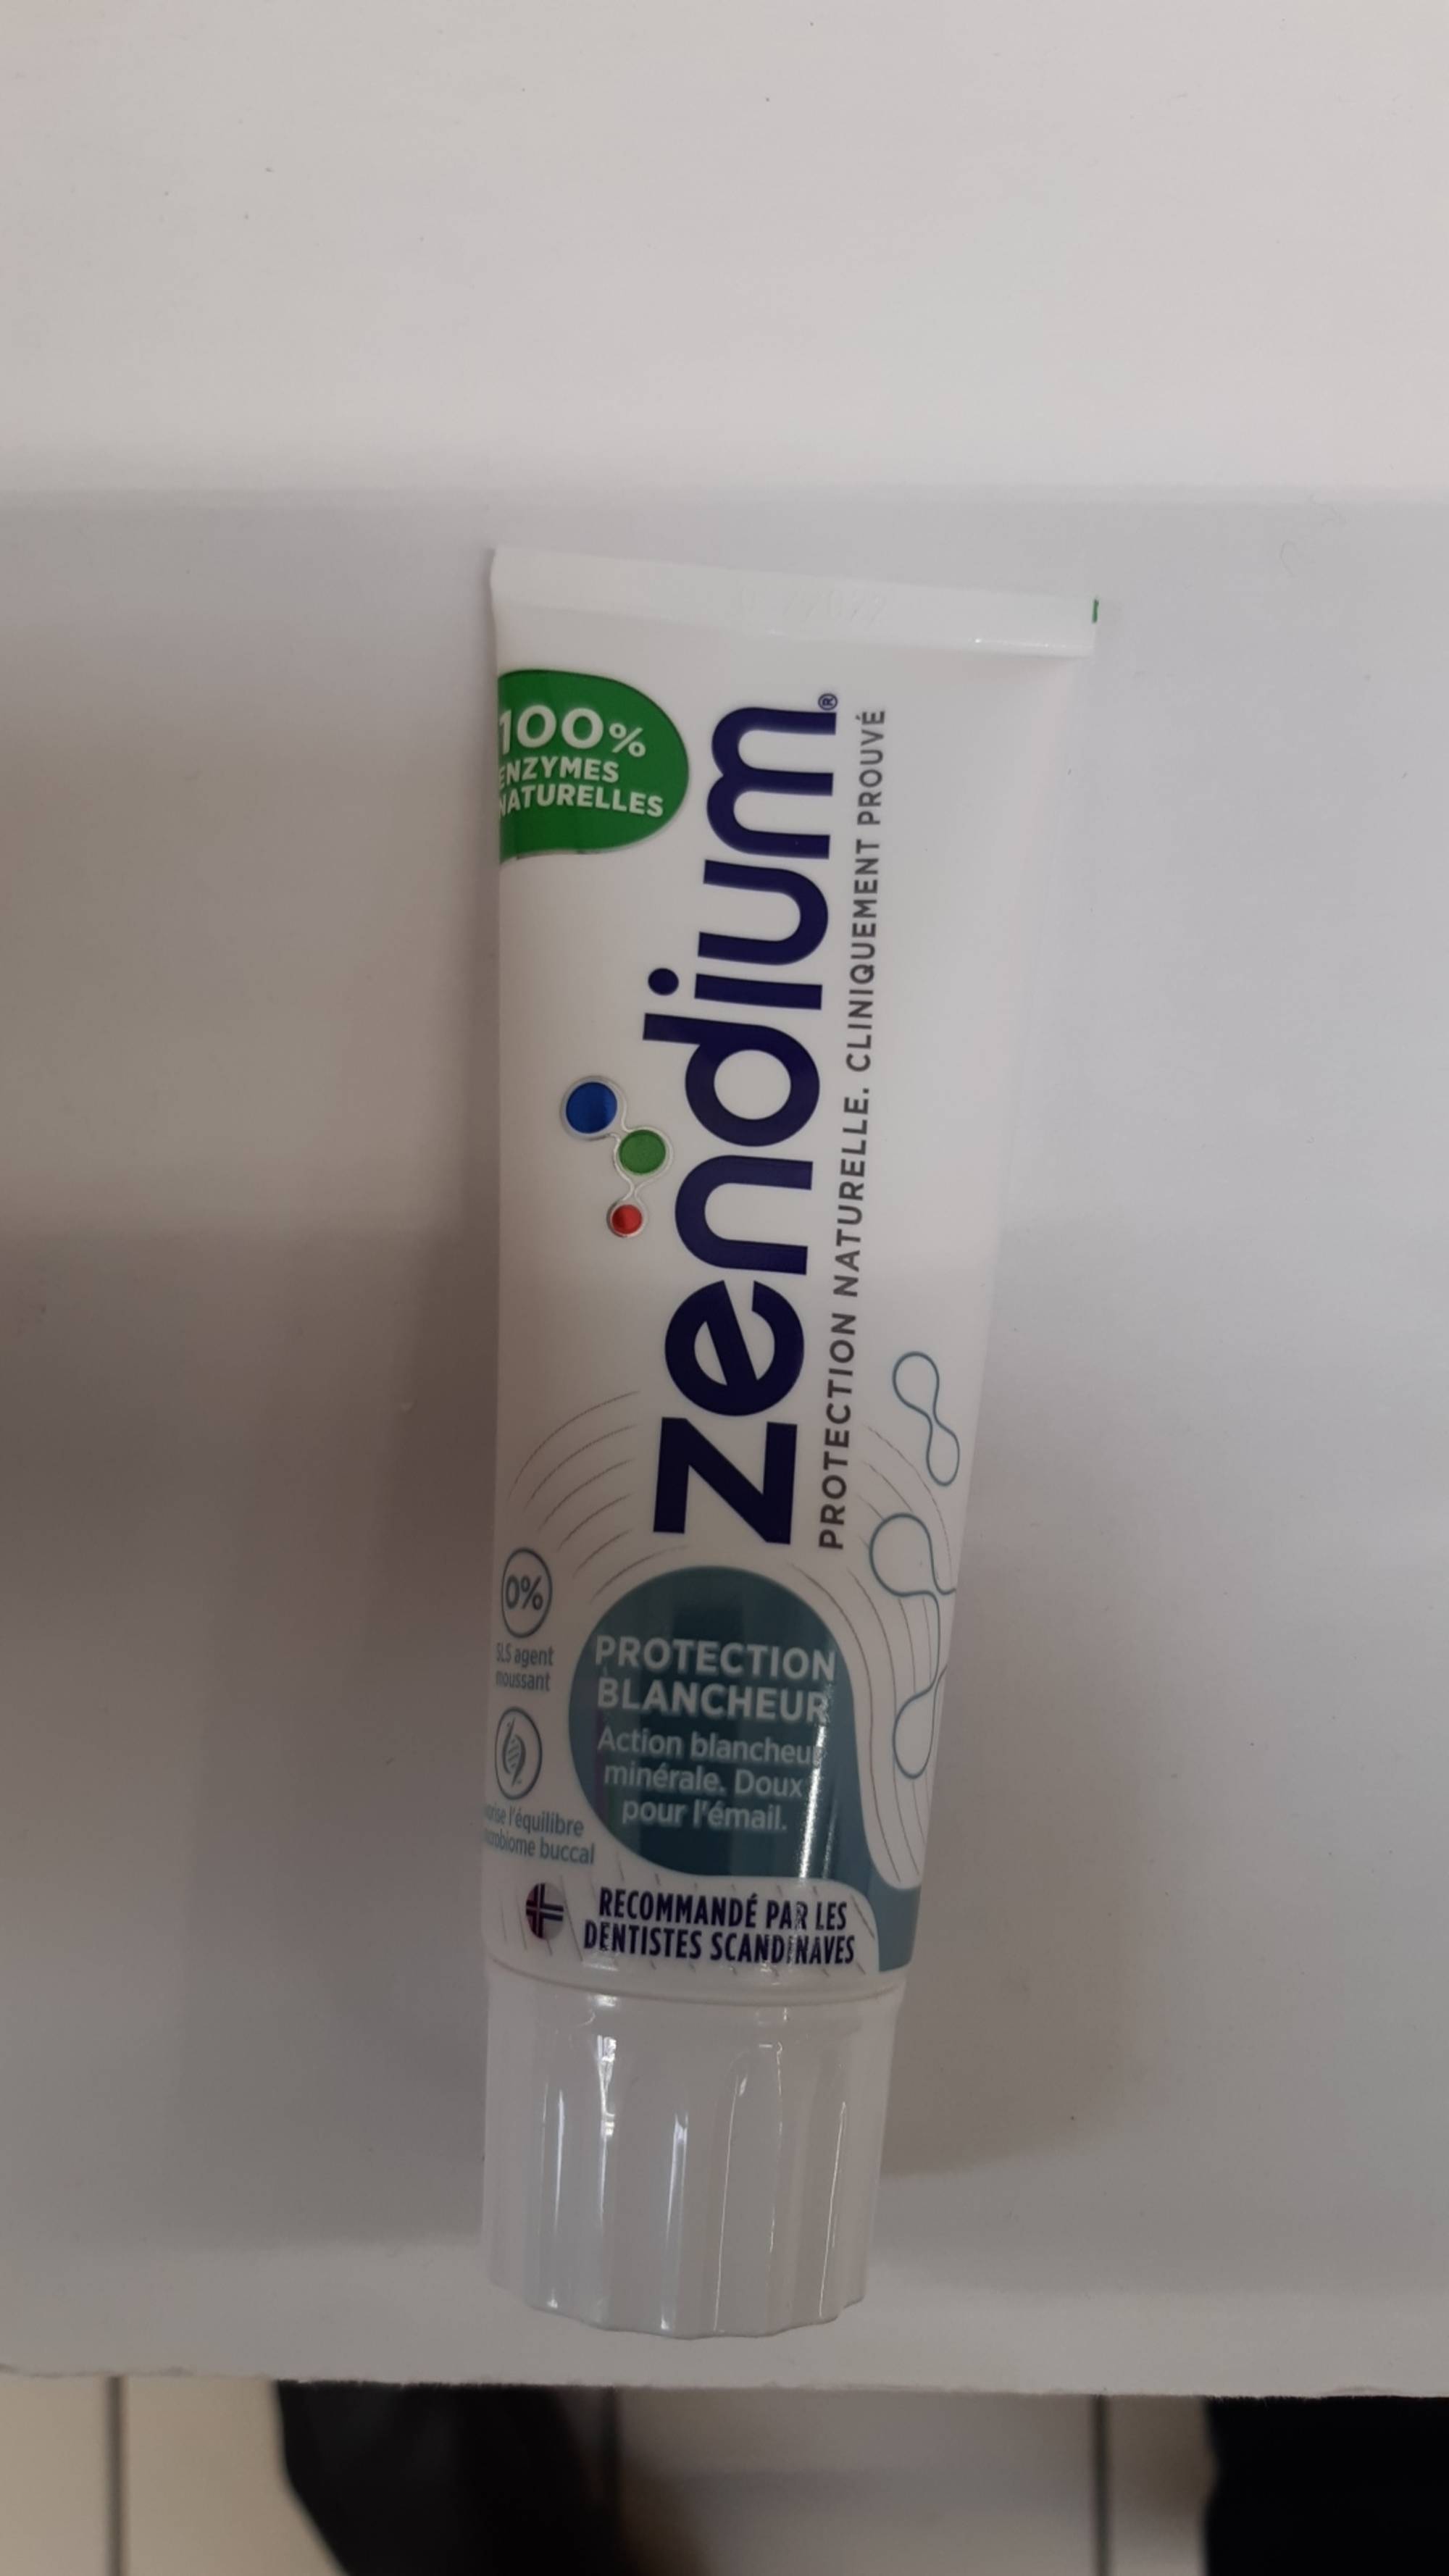 ZENDIUM - Protection blancheur - Action blancheur minérale